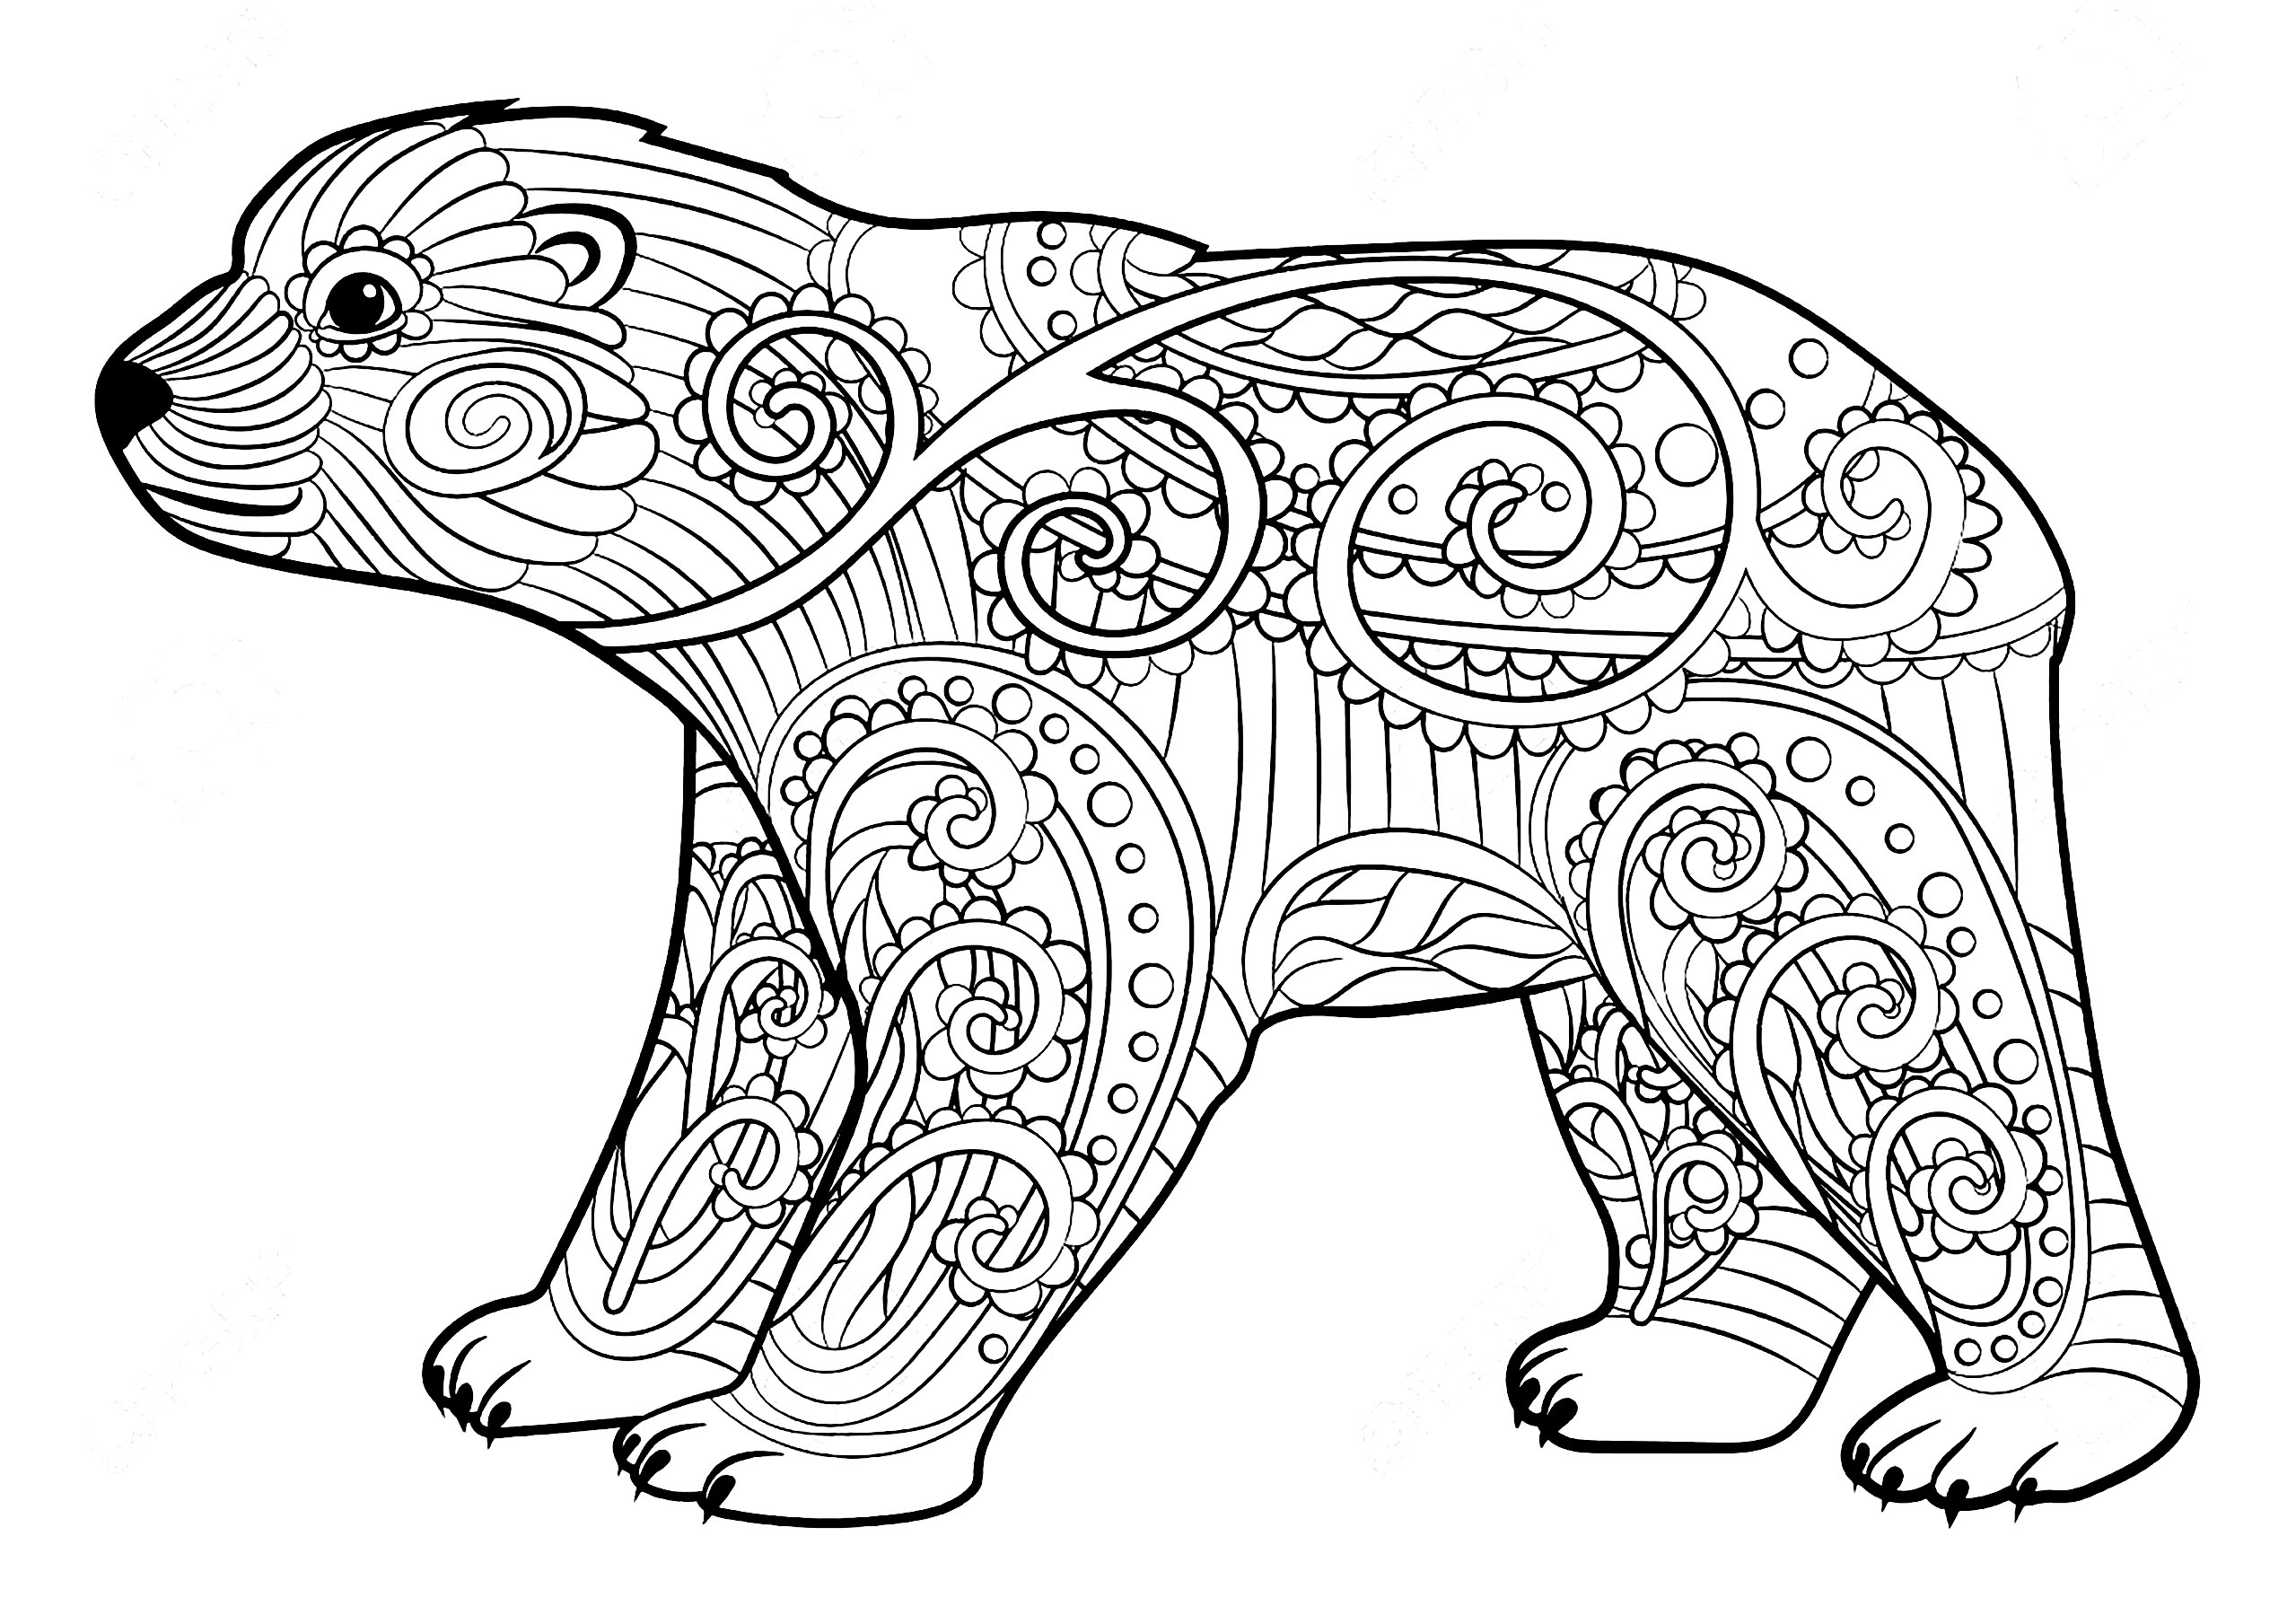 Página para colorir simples de um ursinho, cheia de bonitos padrões, Fonte : 123rf   Artista : Alina Safiullina #NOLINK